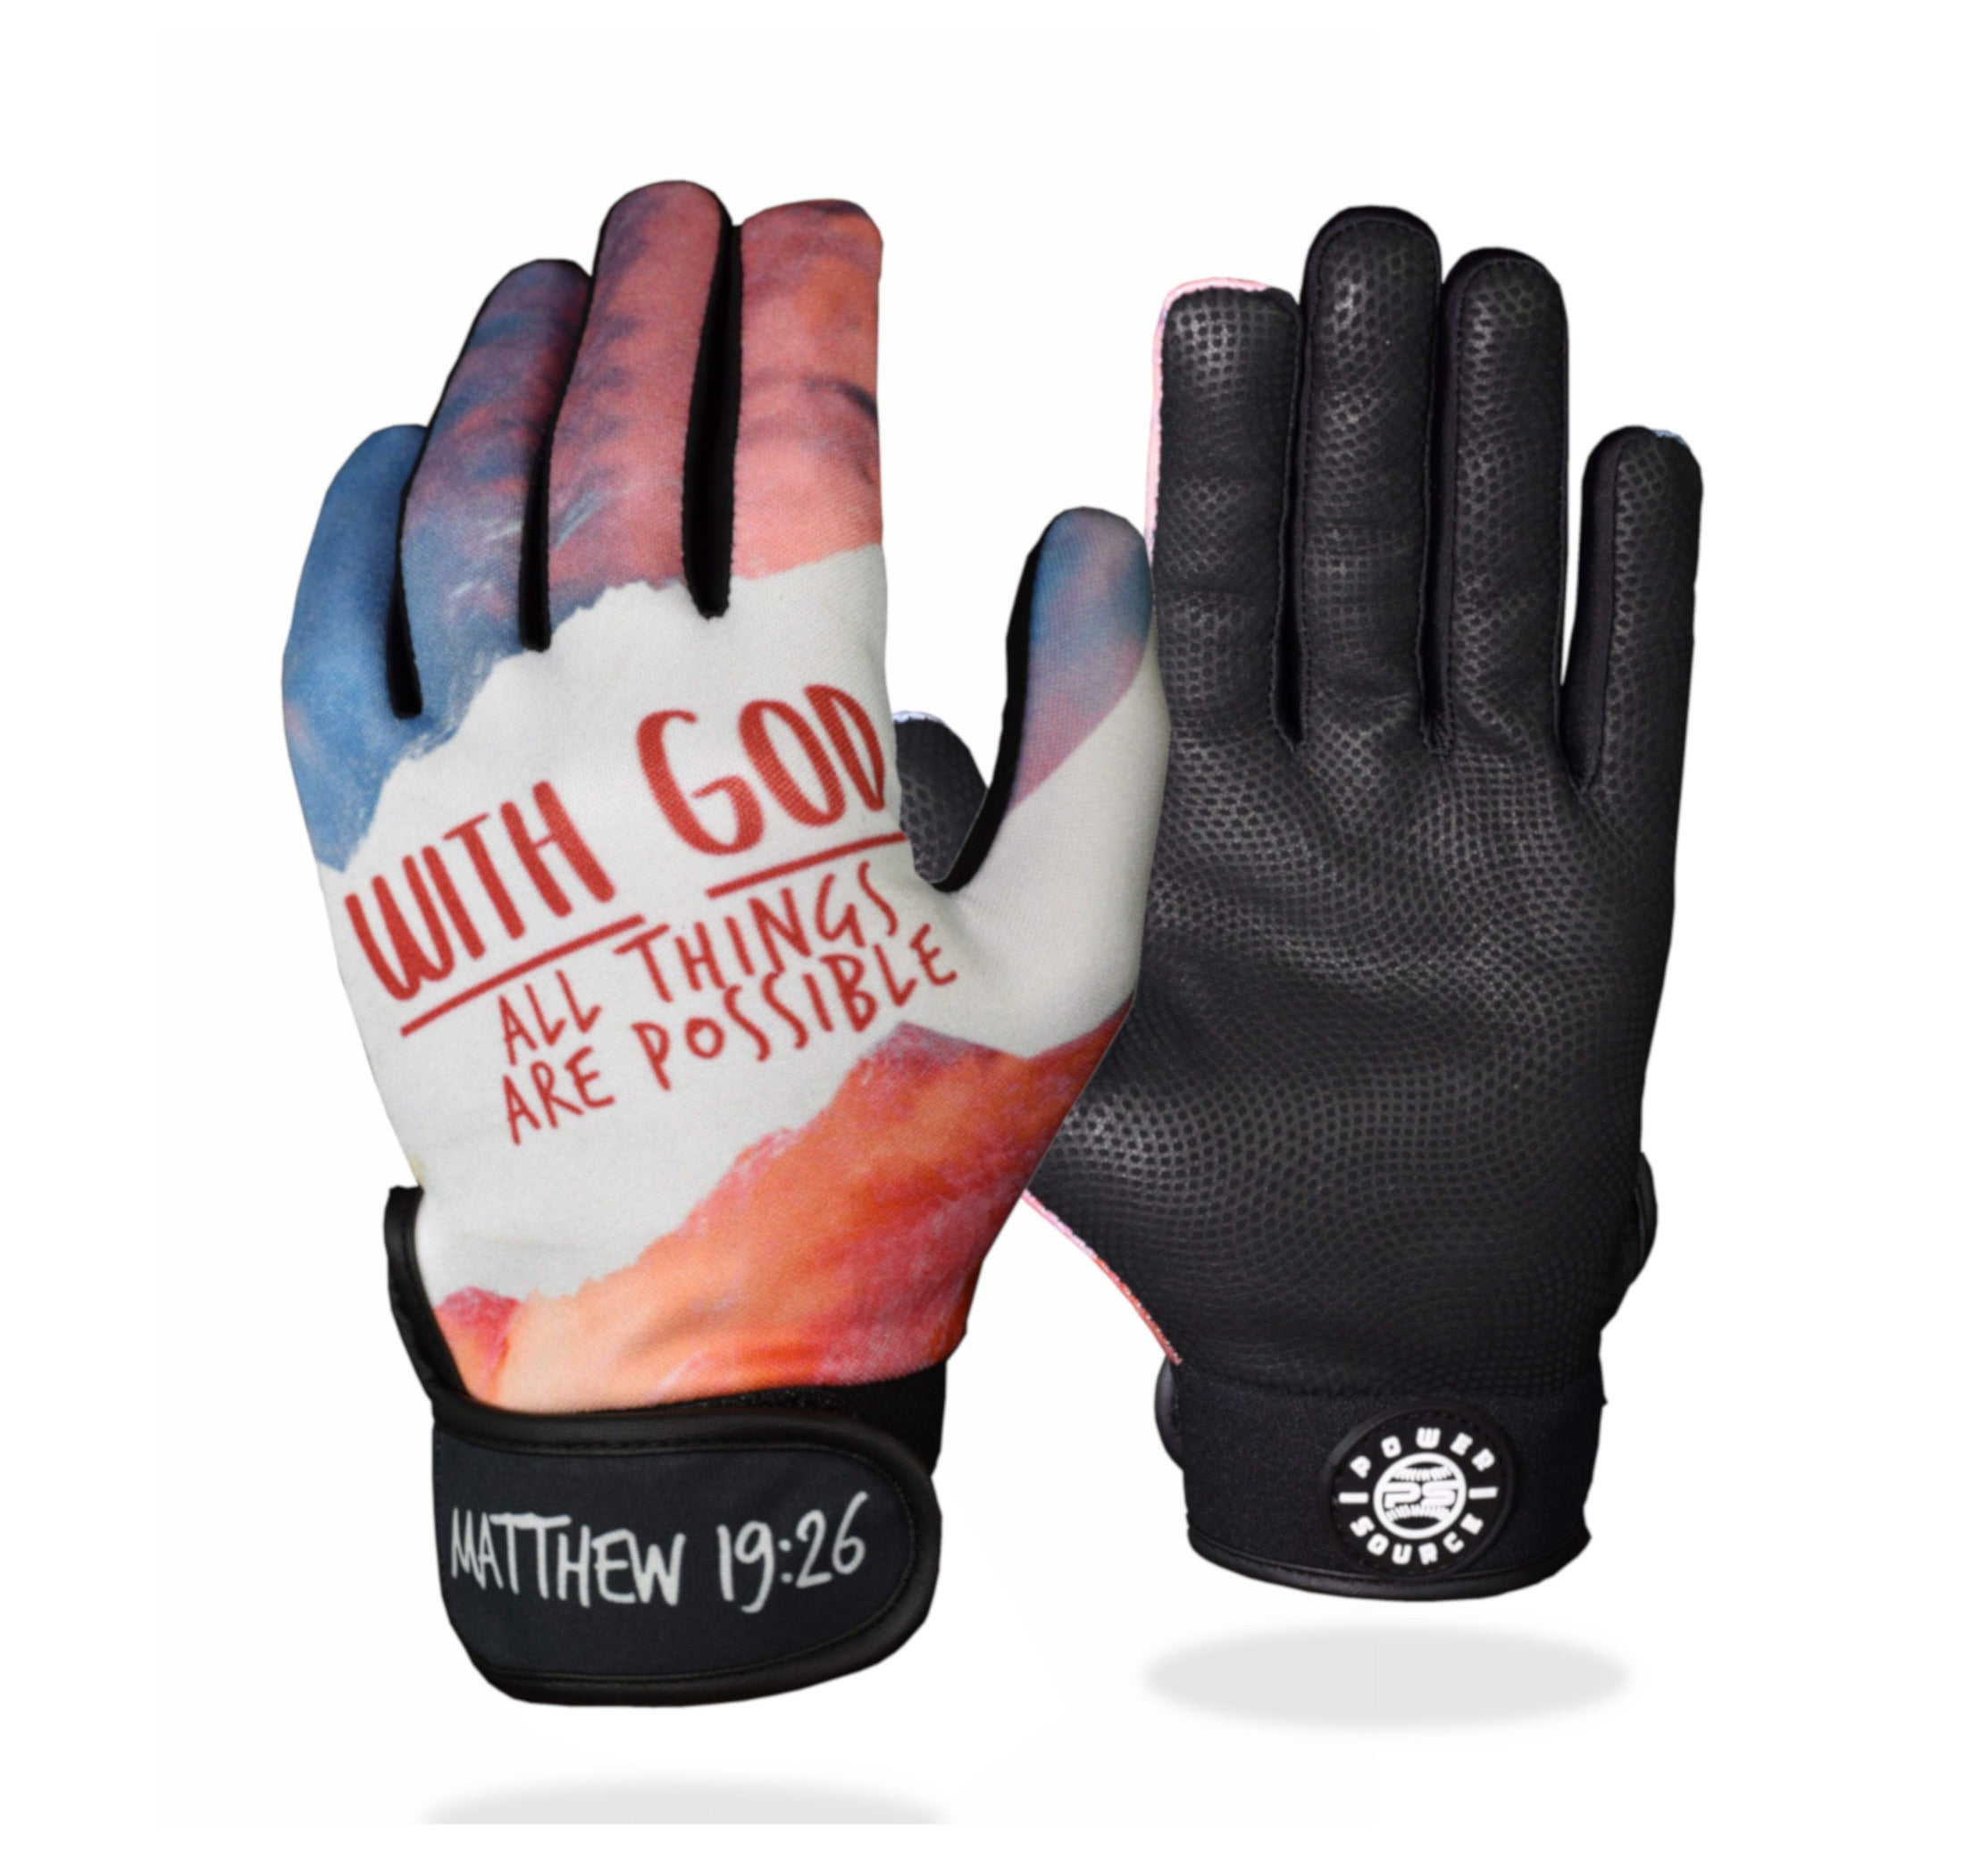 Power Stones Batting Gloves - Shop Our Baseball Batting Gloves